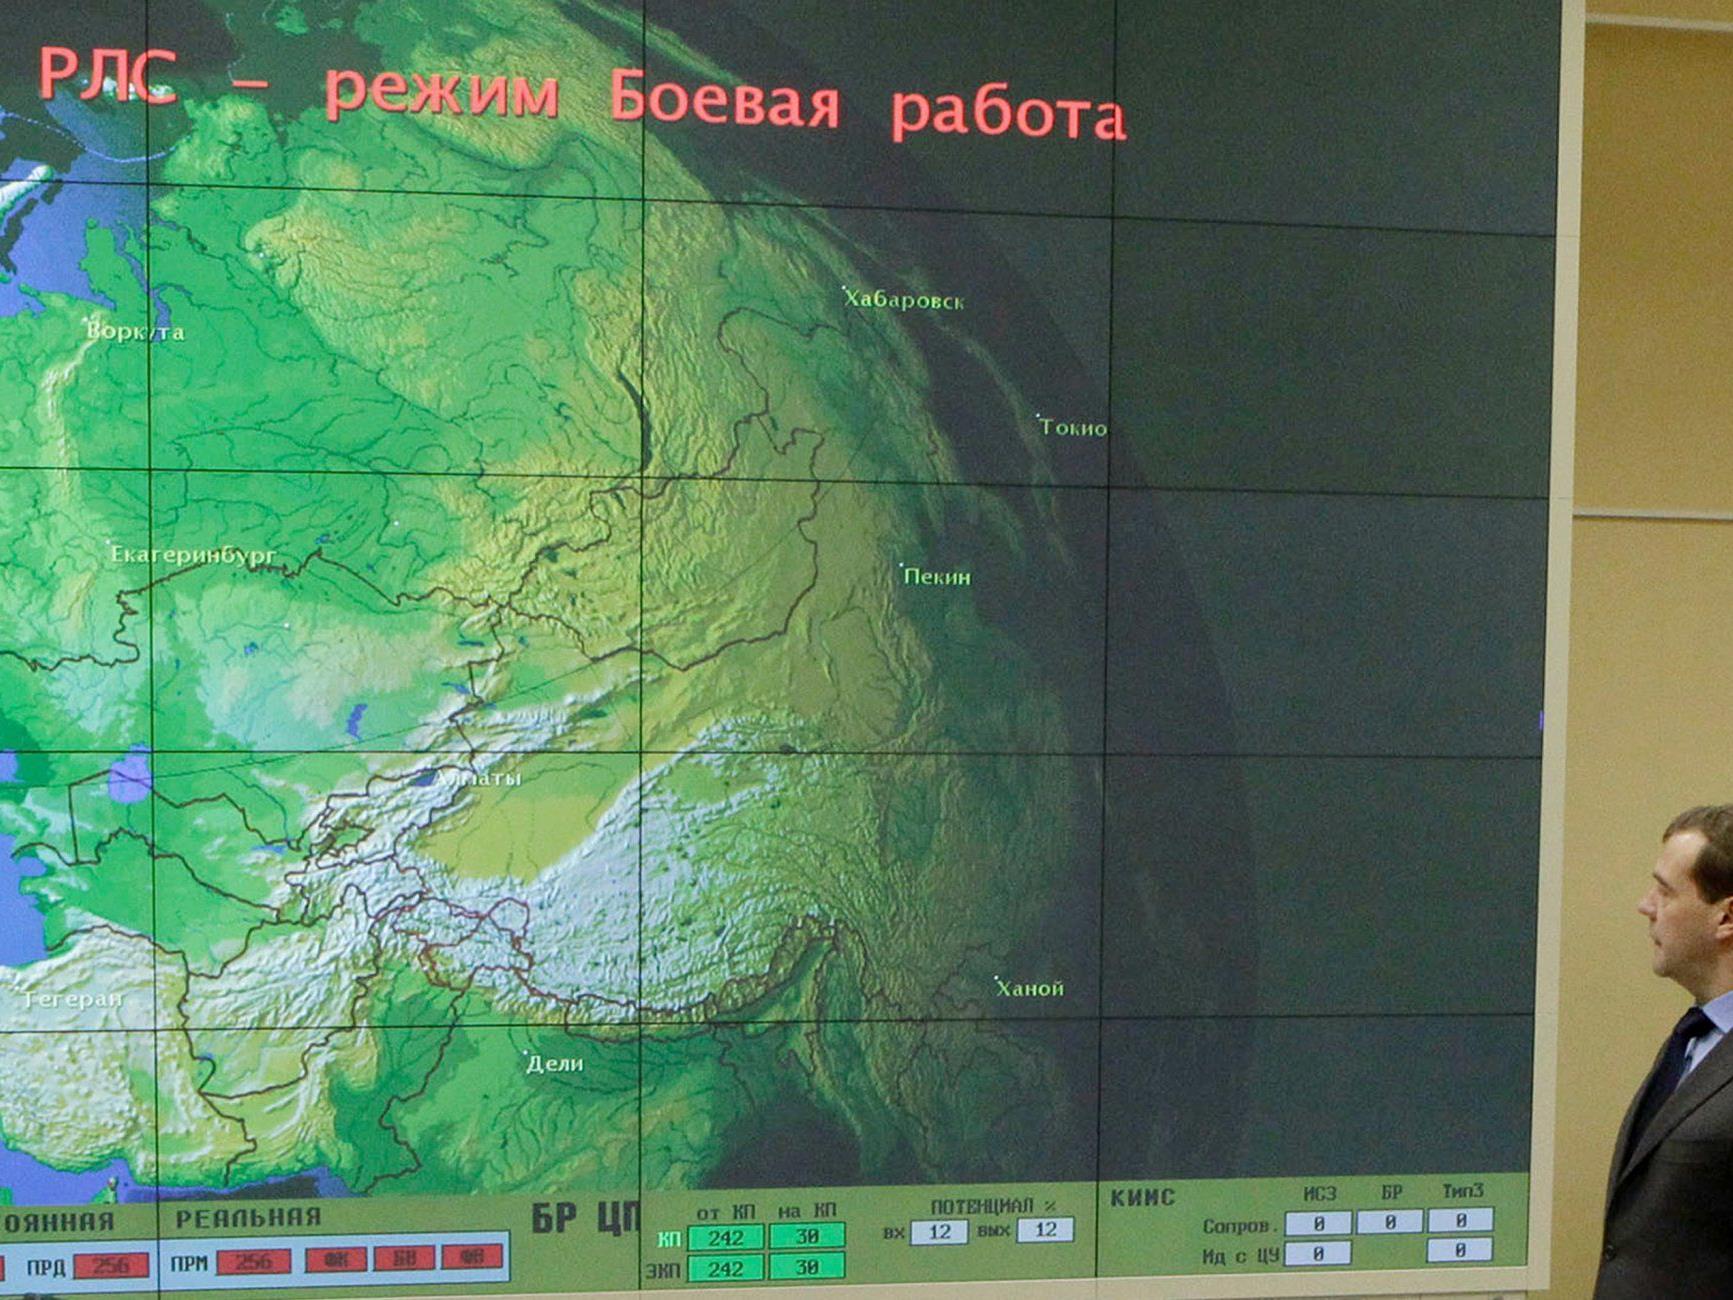 Der russische Präsident Medvedev besuchte die neue Radar-Station in Kaliningrad.